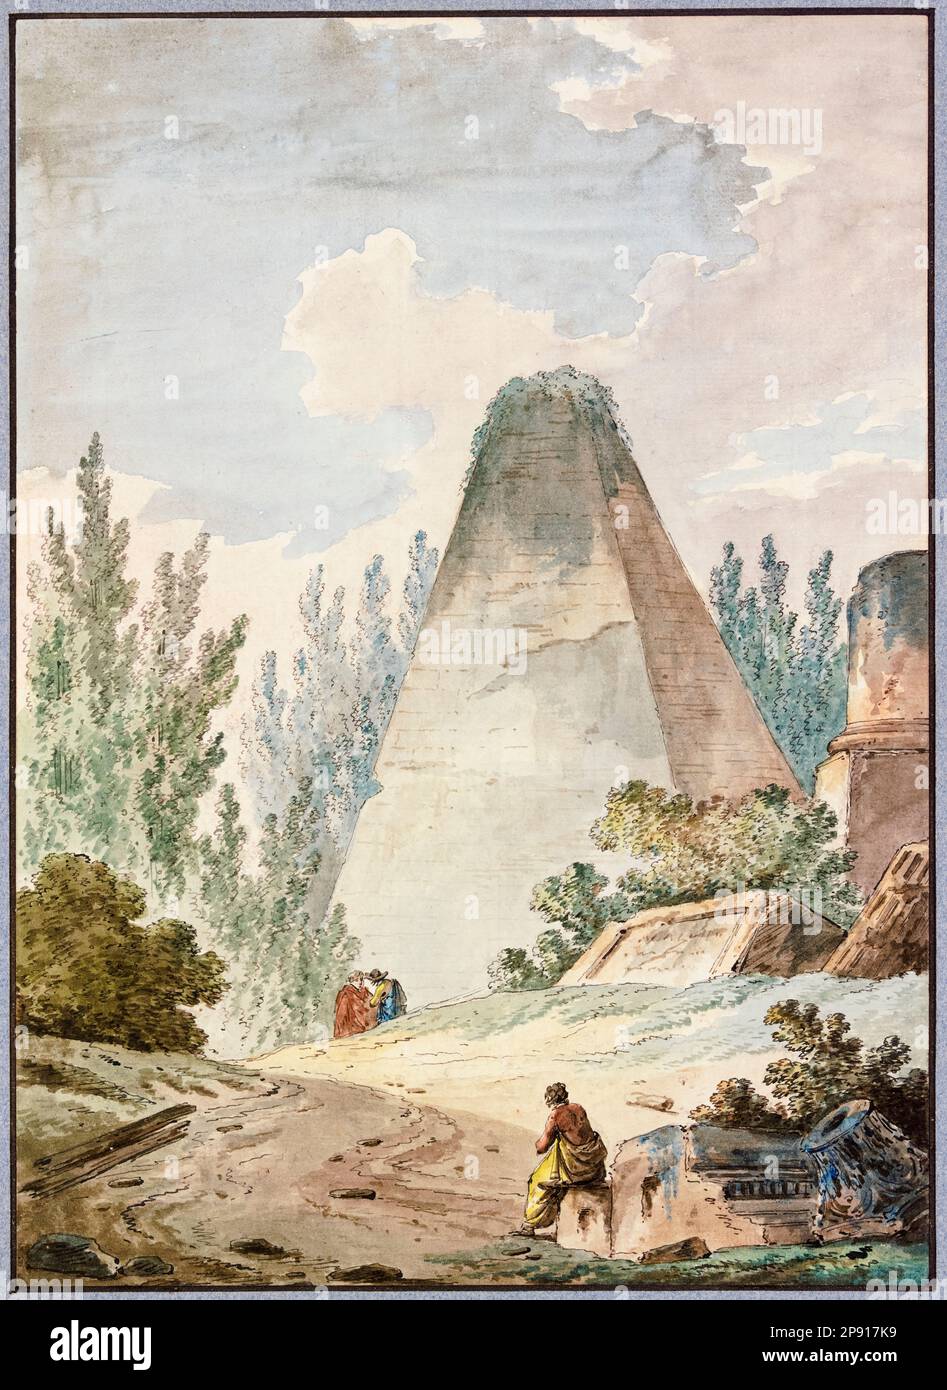 Pyramide mit einem kaputten Dach in einer Landschaft mit antiken Ruinen, Aquarellgemälde von Hubert Robert, vor 1808 Stockfoto